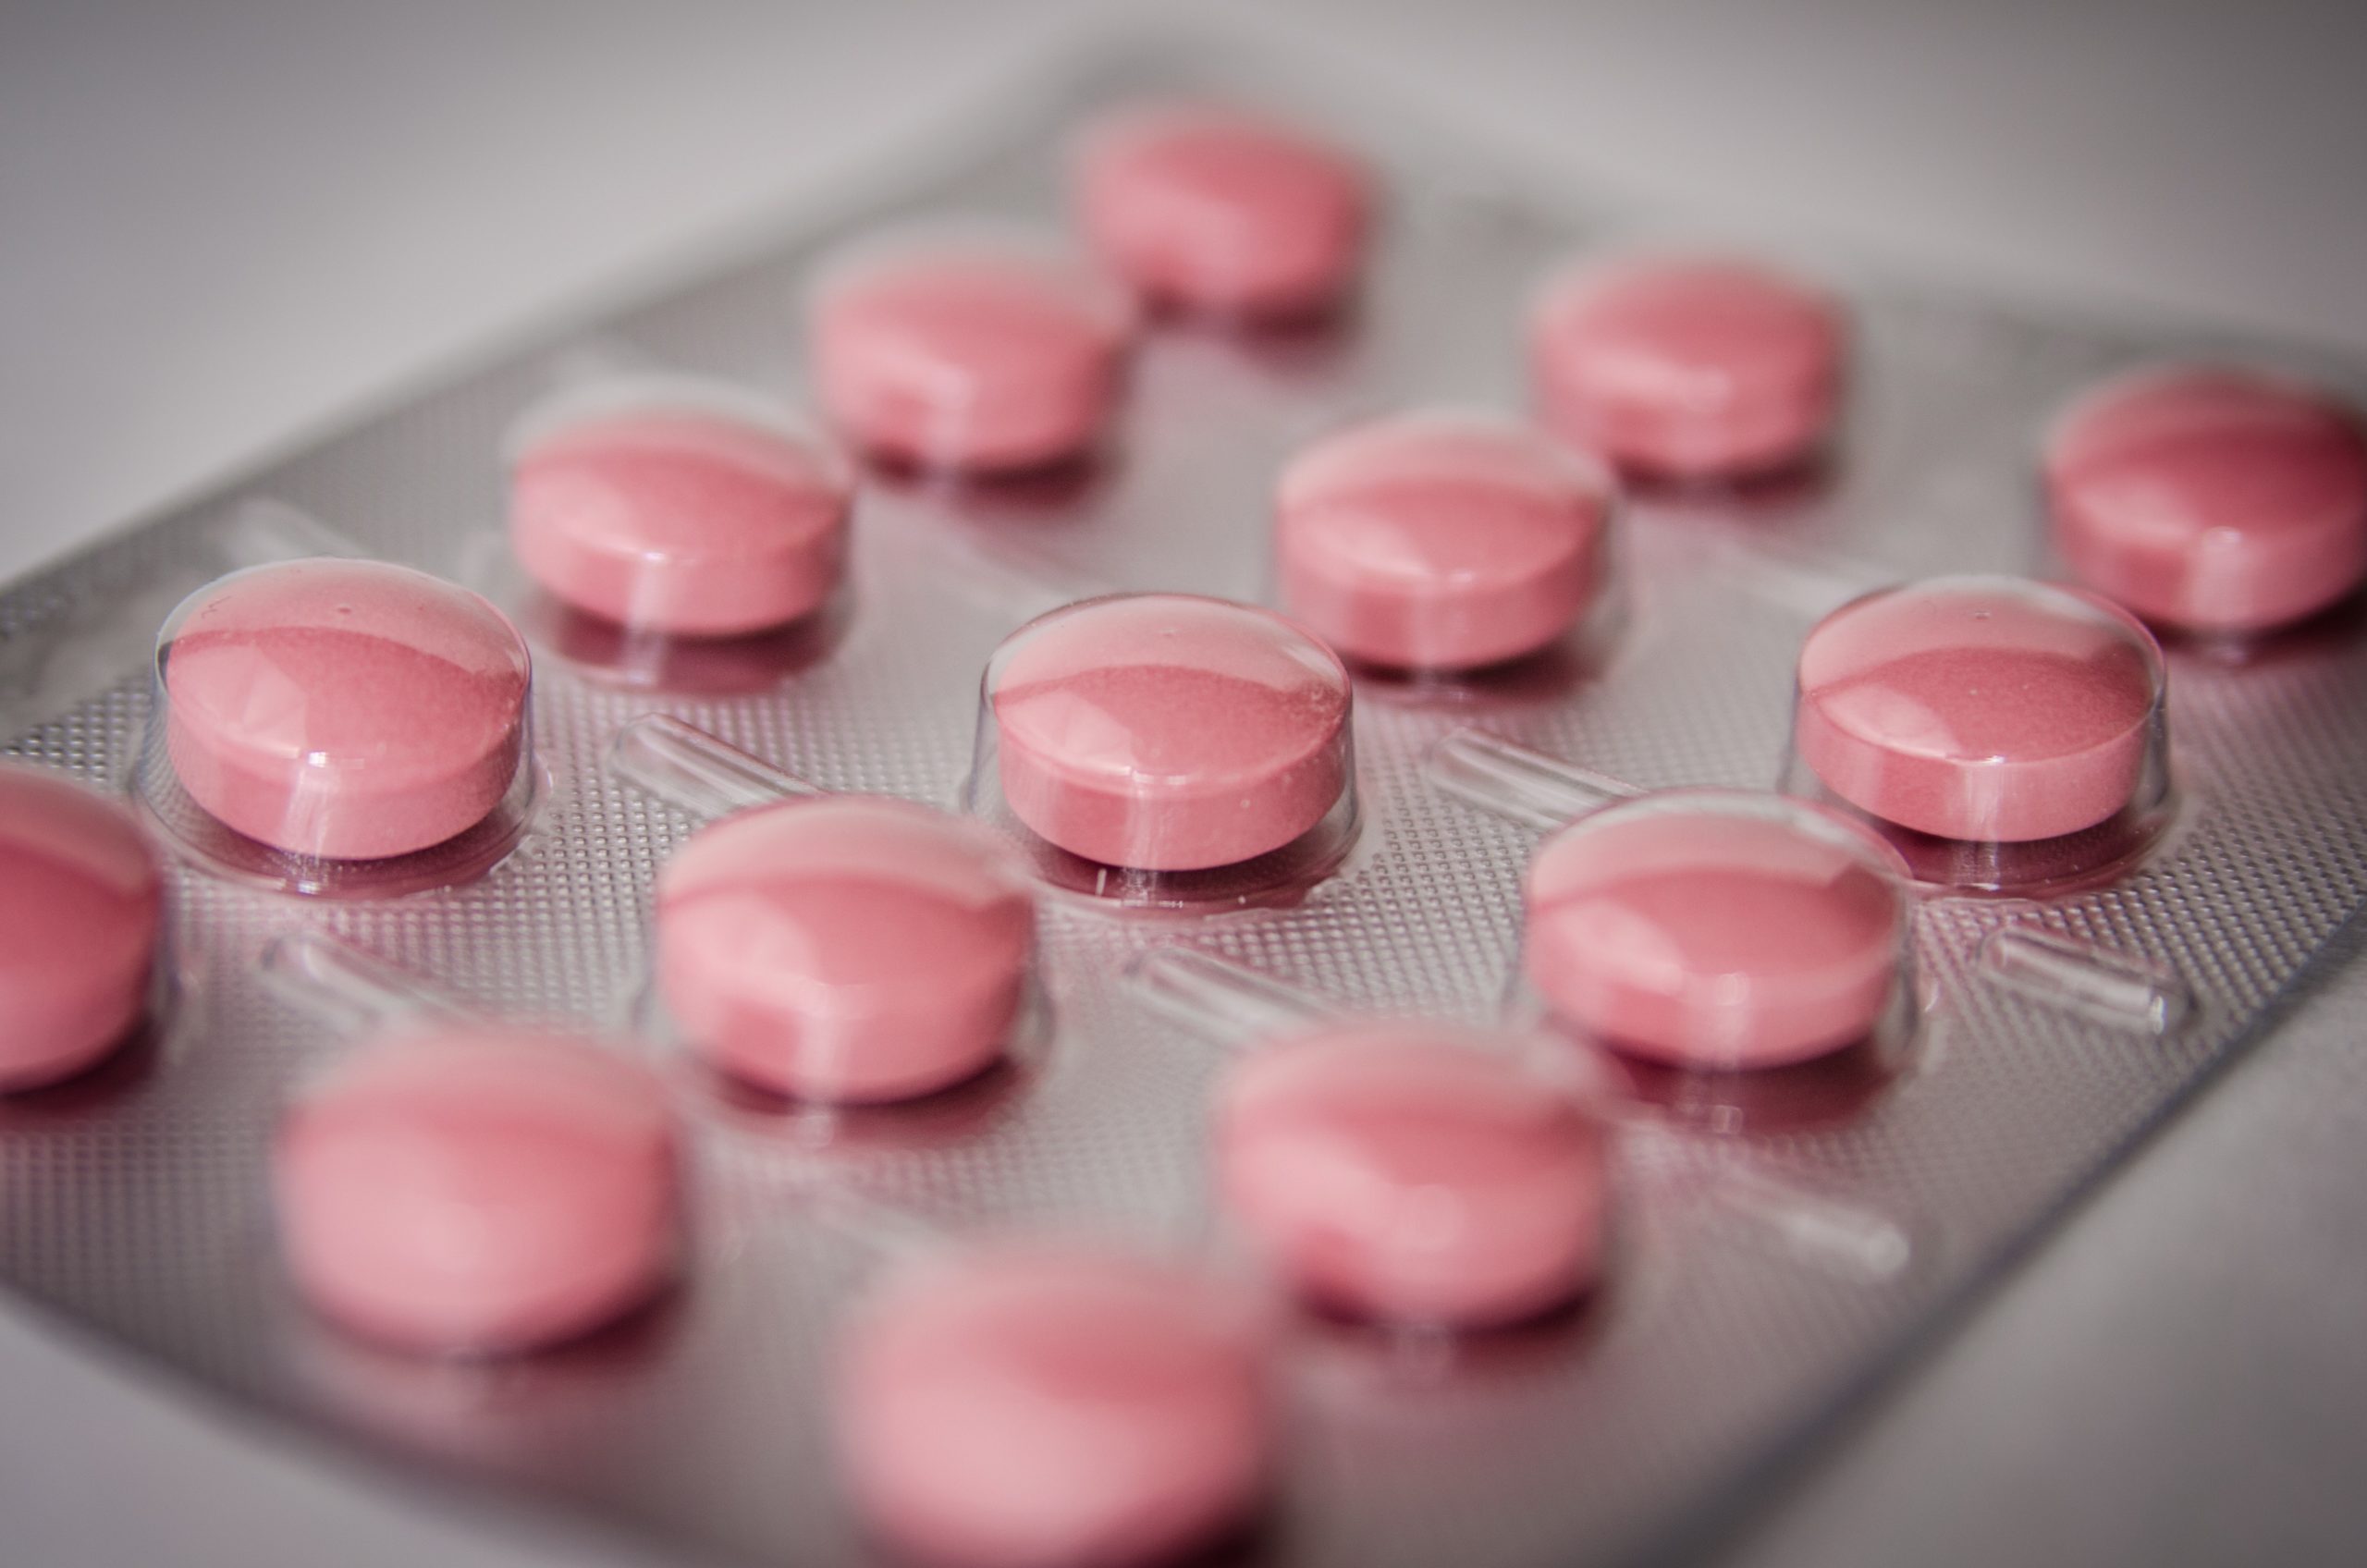 Pilule contraceptive : un facteur de risque du cancer du sein ?